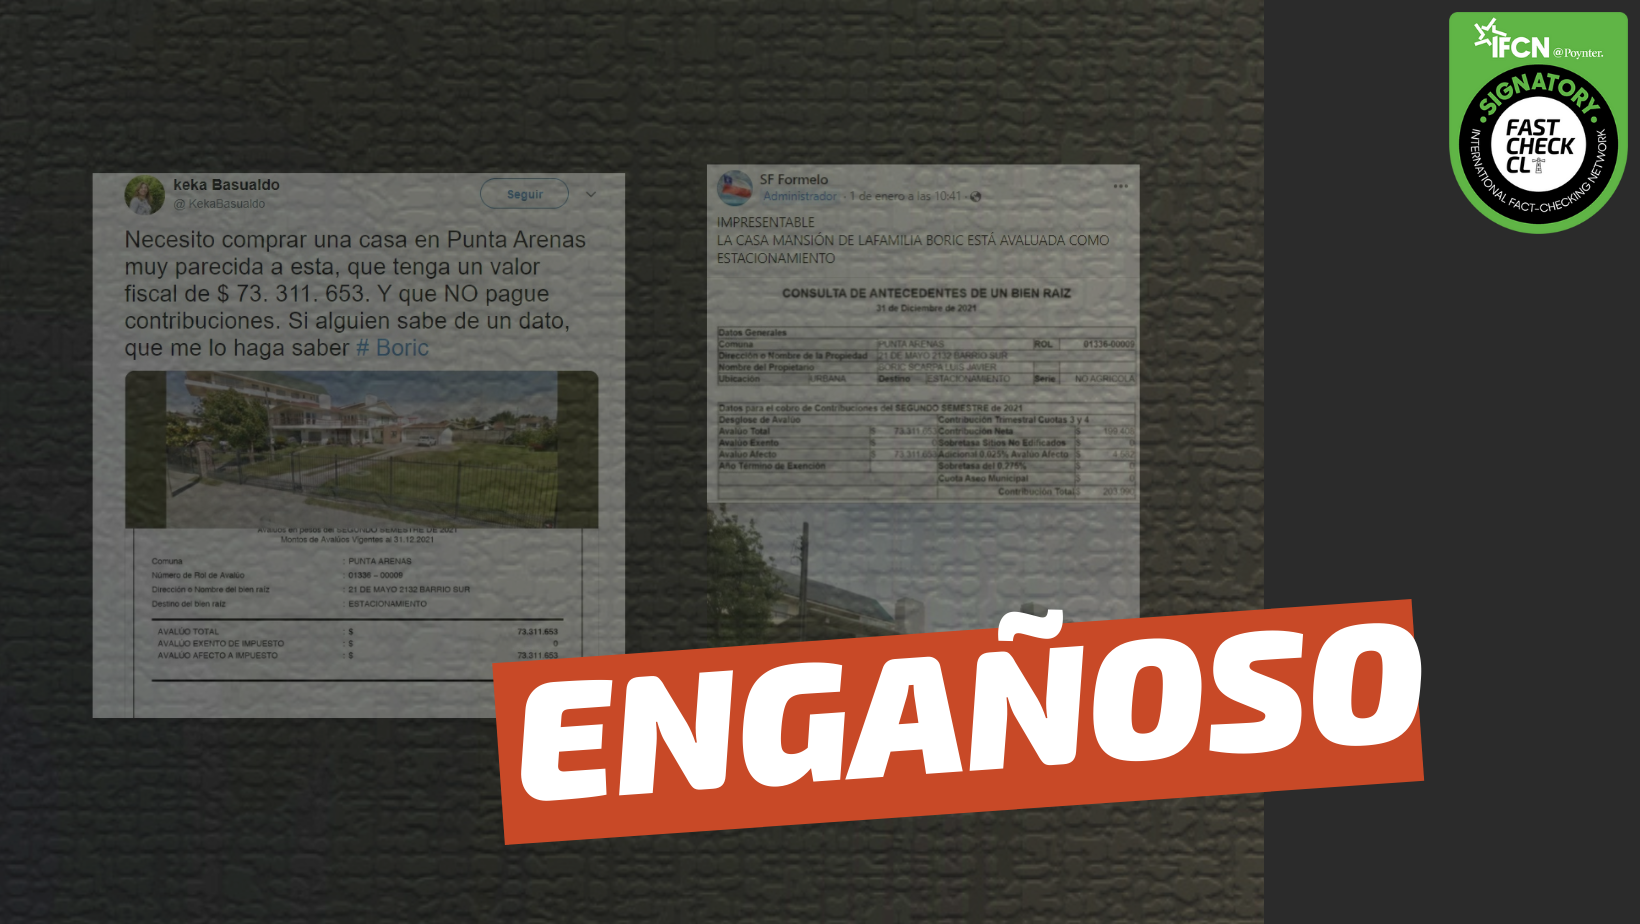 Read more about the article (Imágenes) “La casa mansión de la familia Boric está avaluada como estacionamiento”: #Engañoso